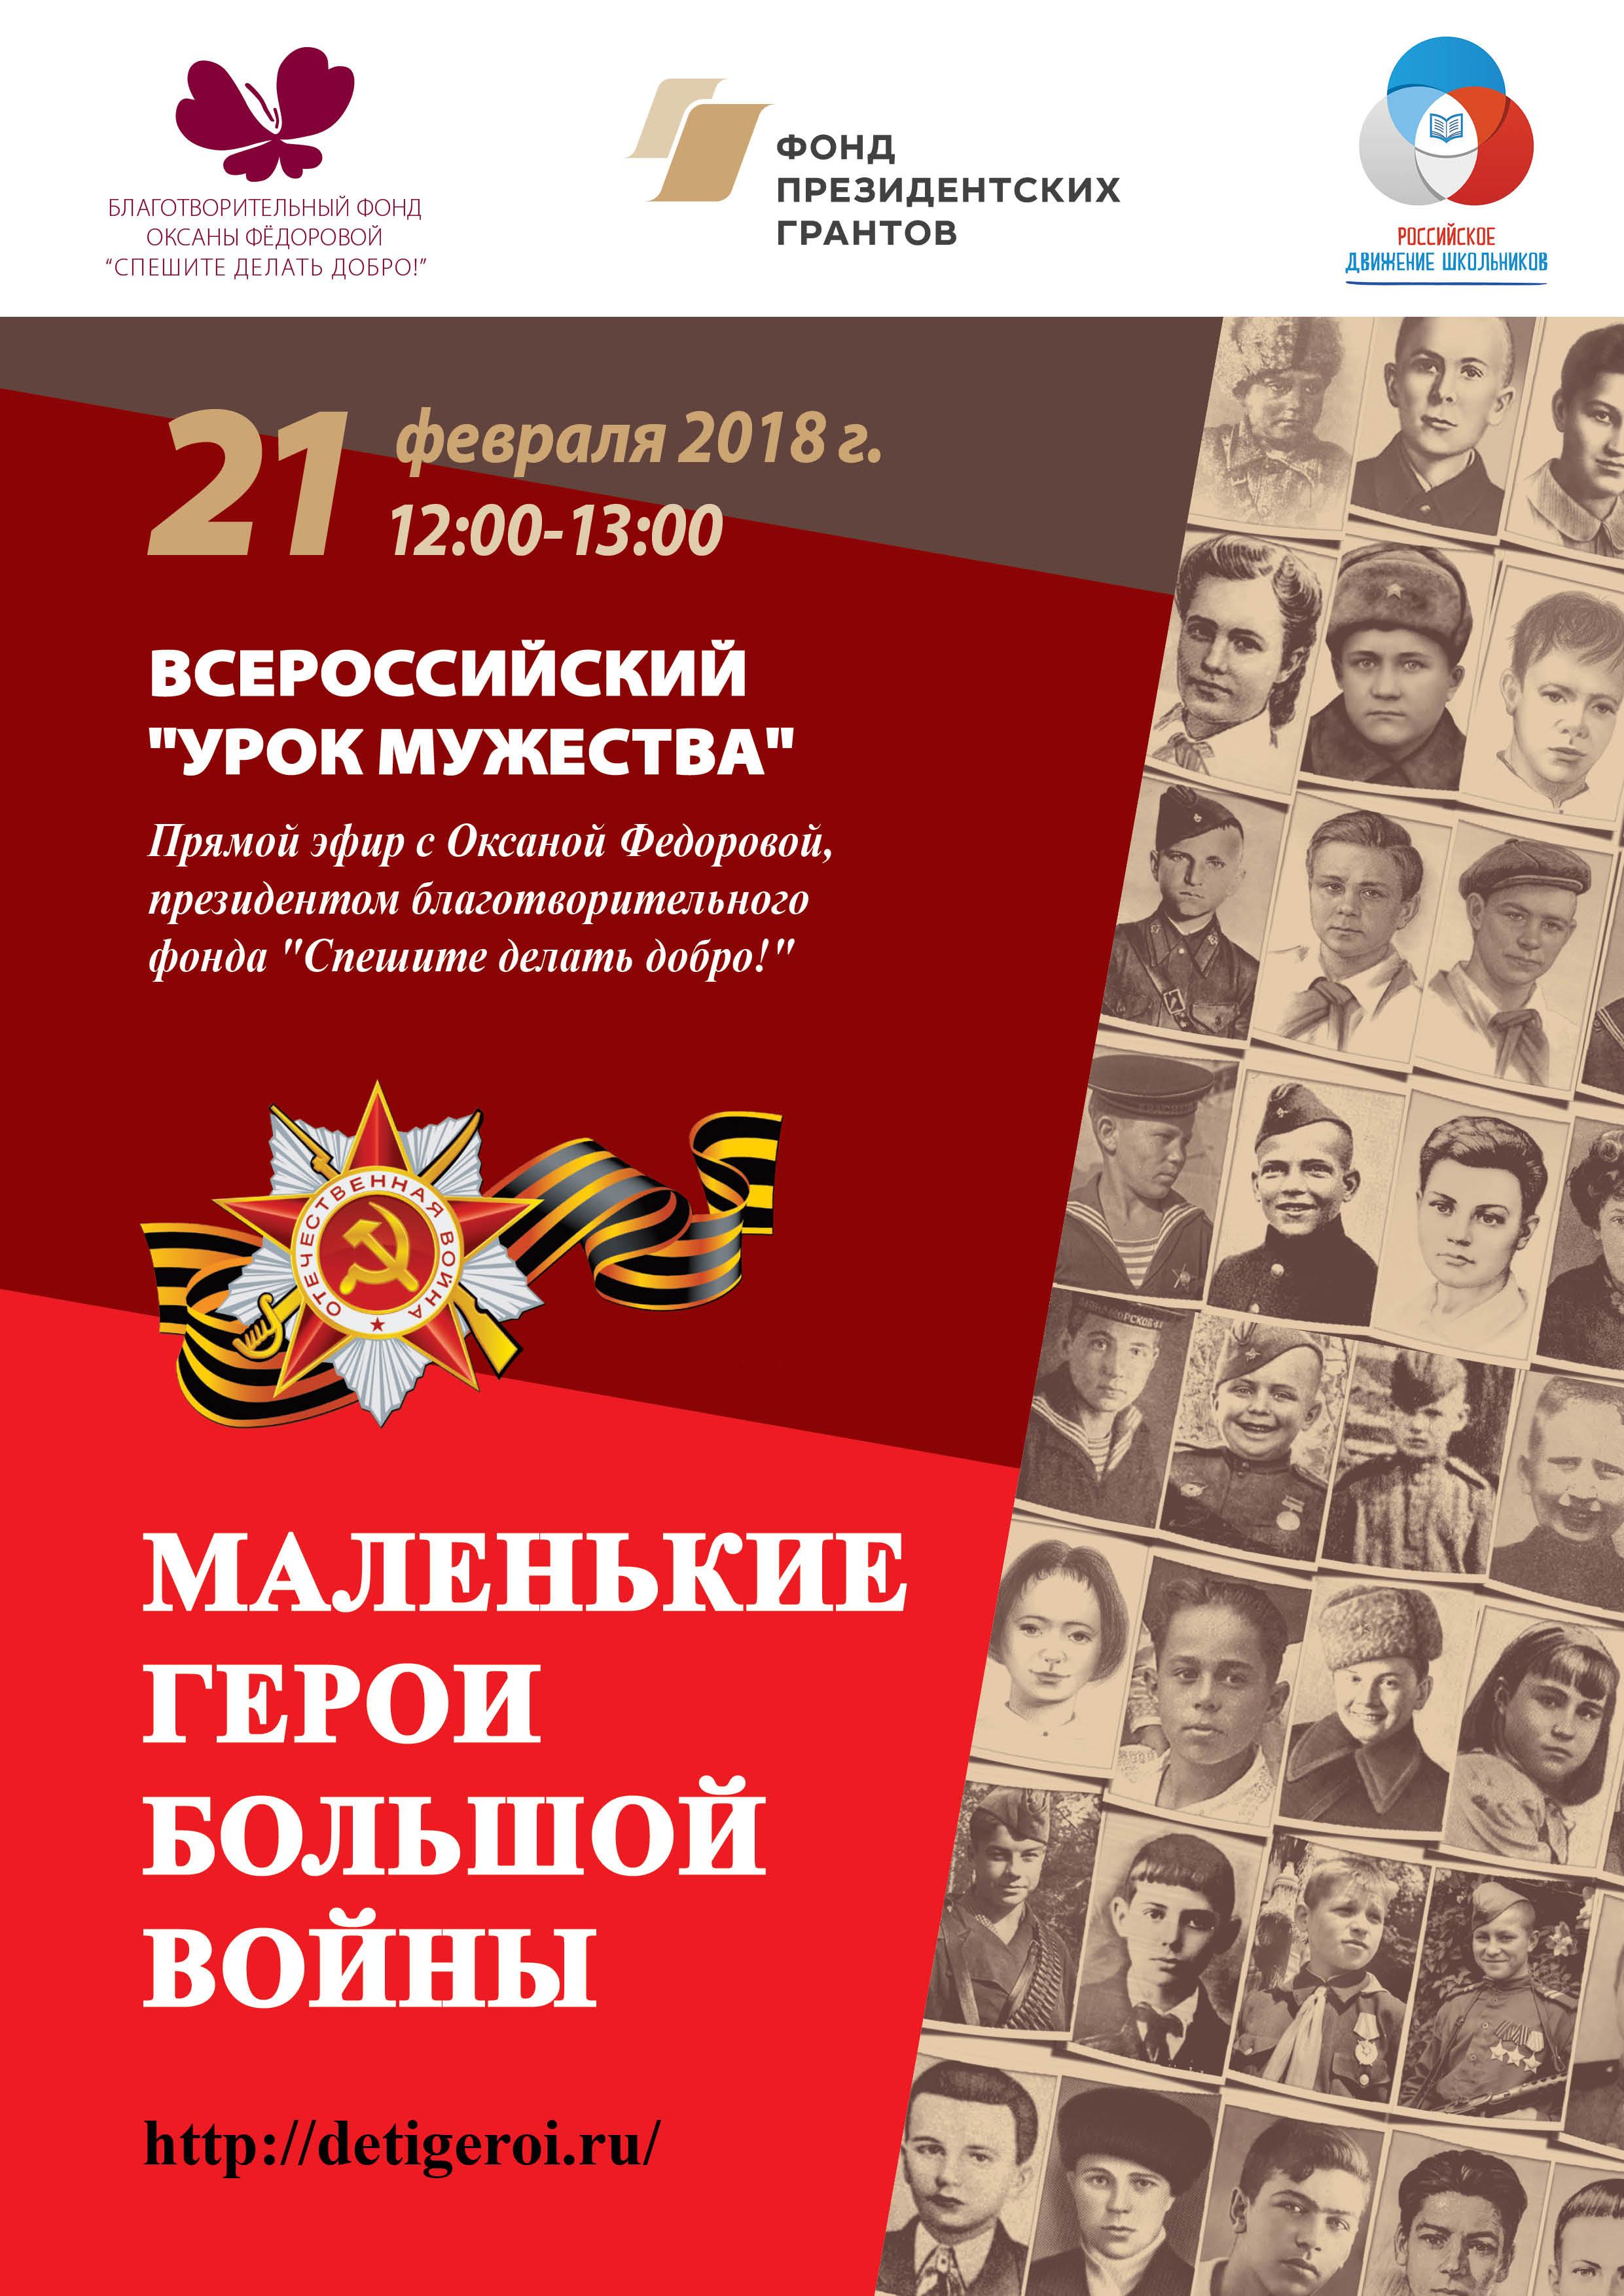 21 февраля впервые состоится Всероссийский Урок мужества! 